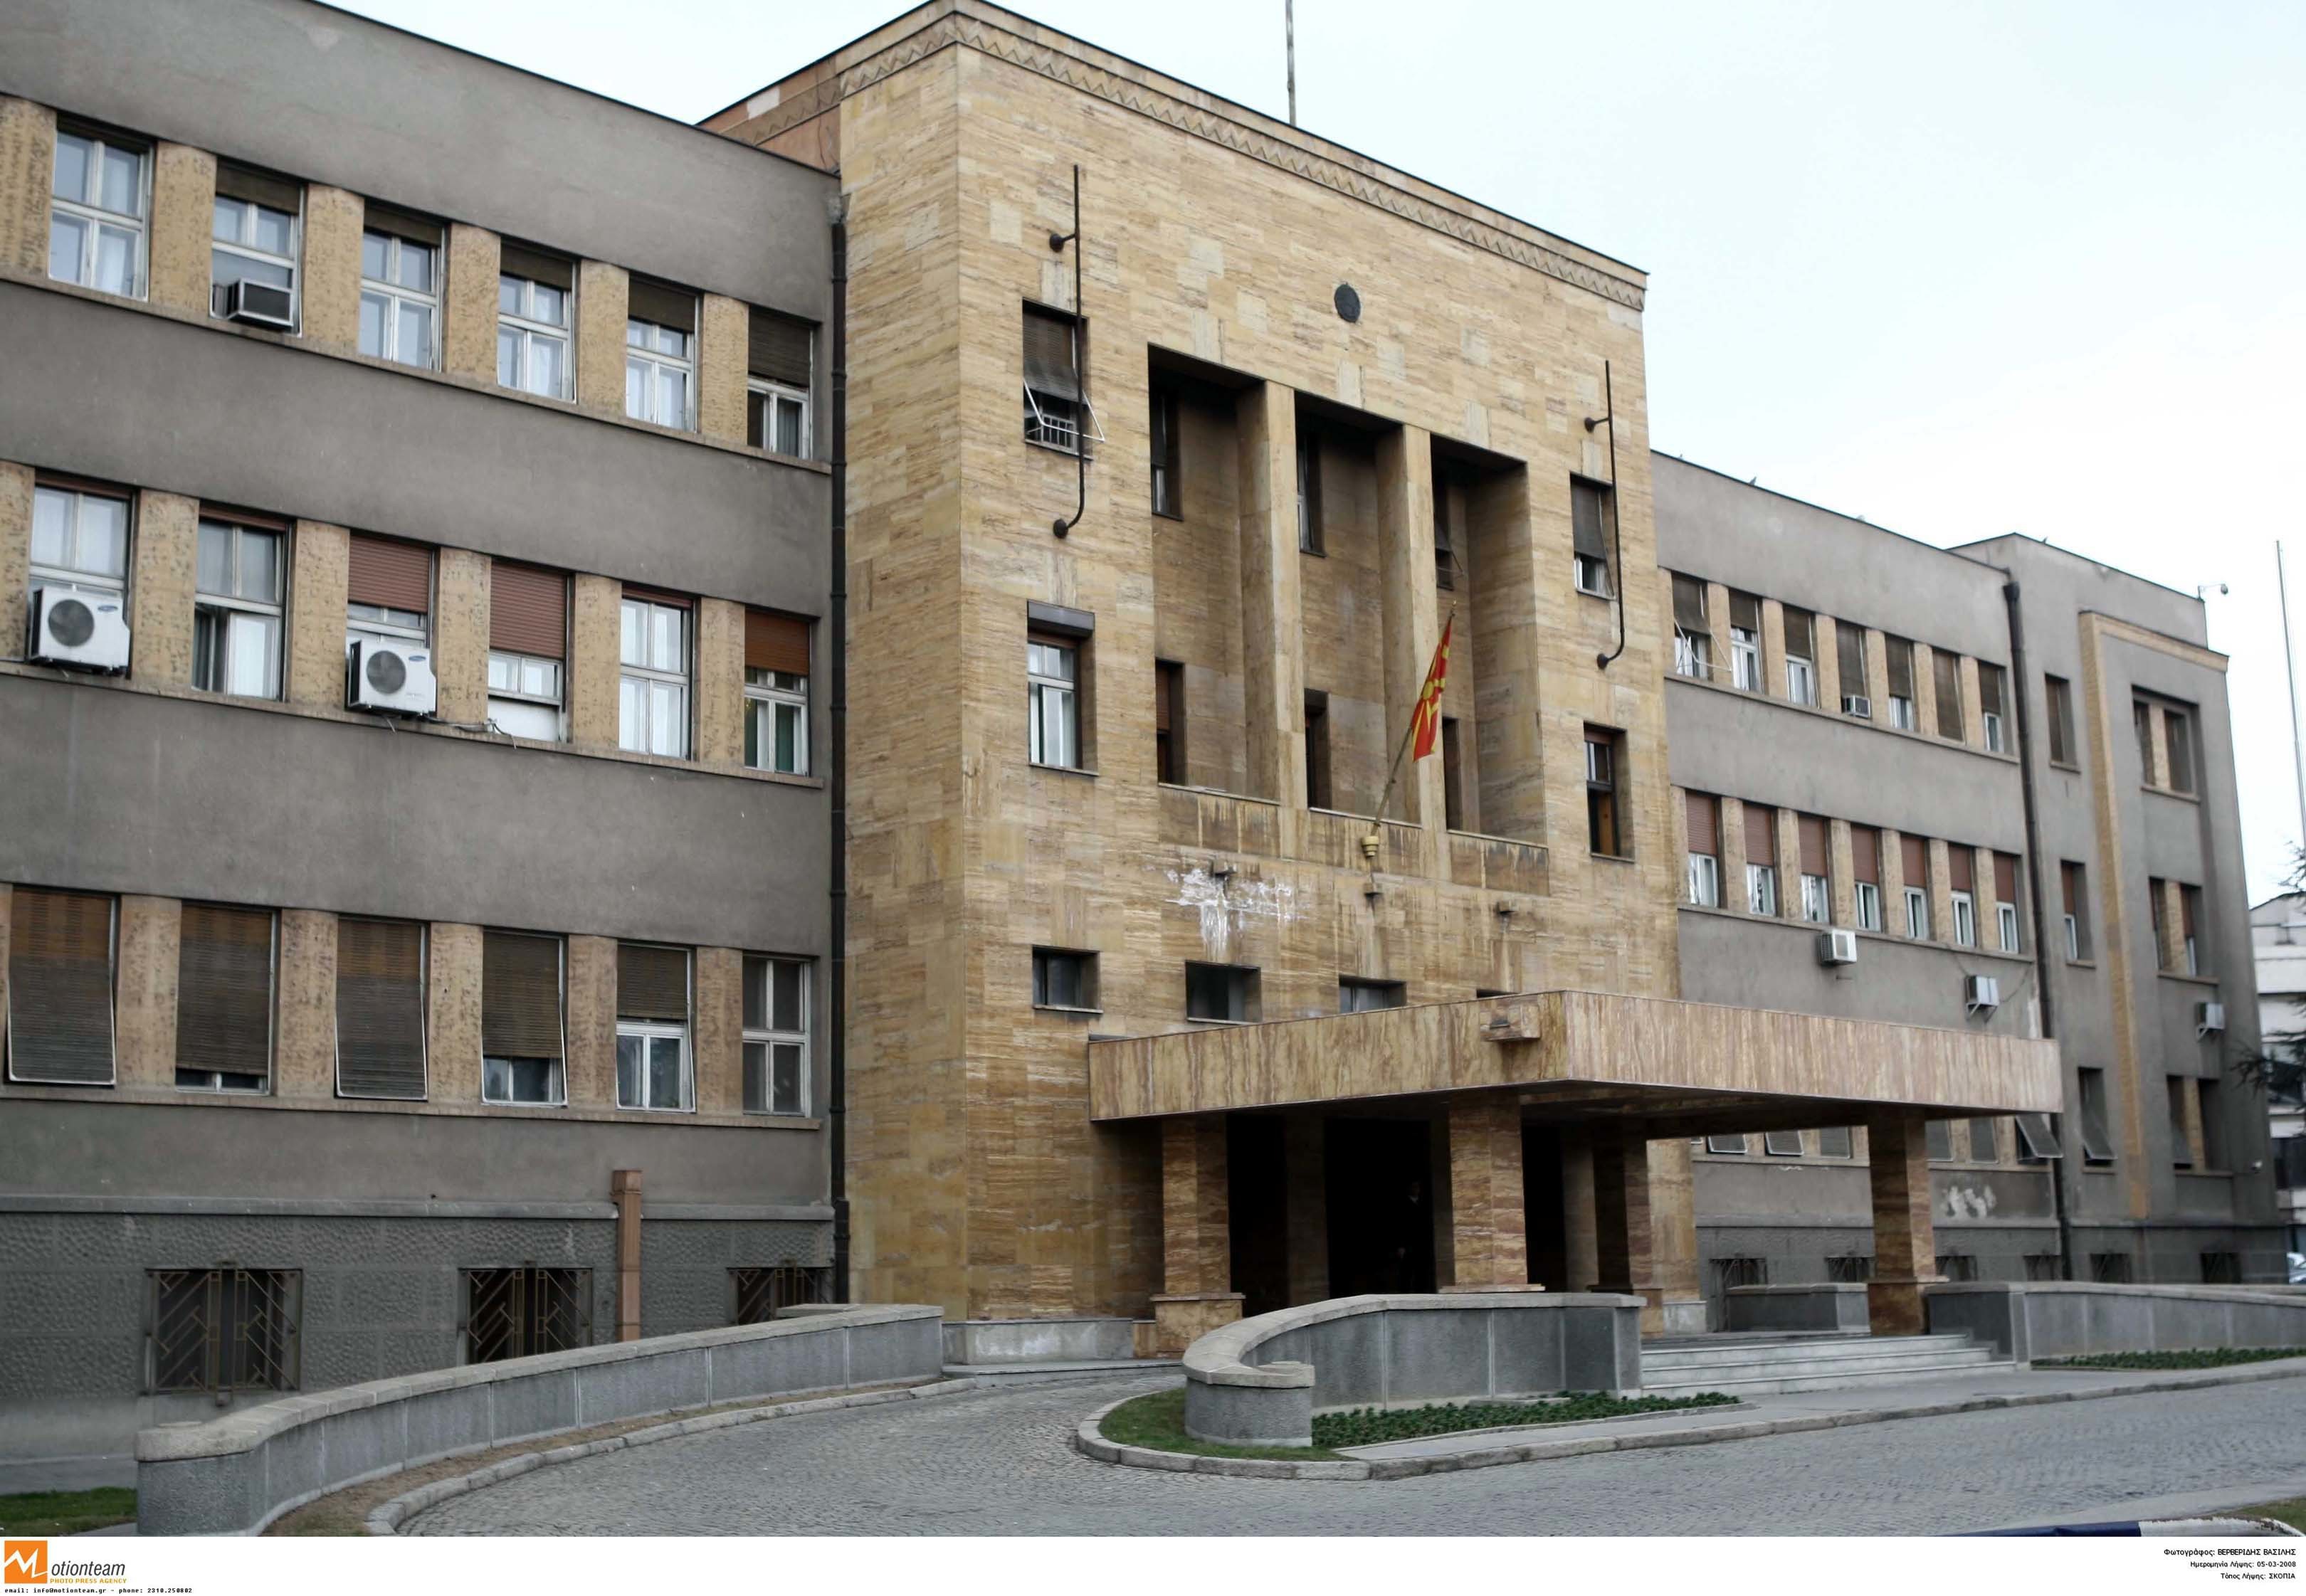 Προχωρούν σε εκλογές τα Σκόπια – Πολιτικές ζυμώσεις στη χώρα